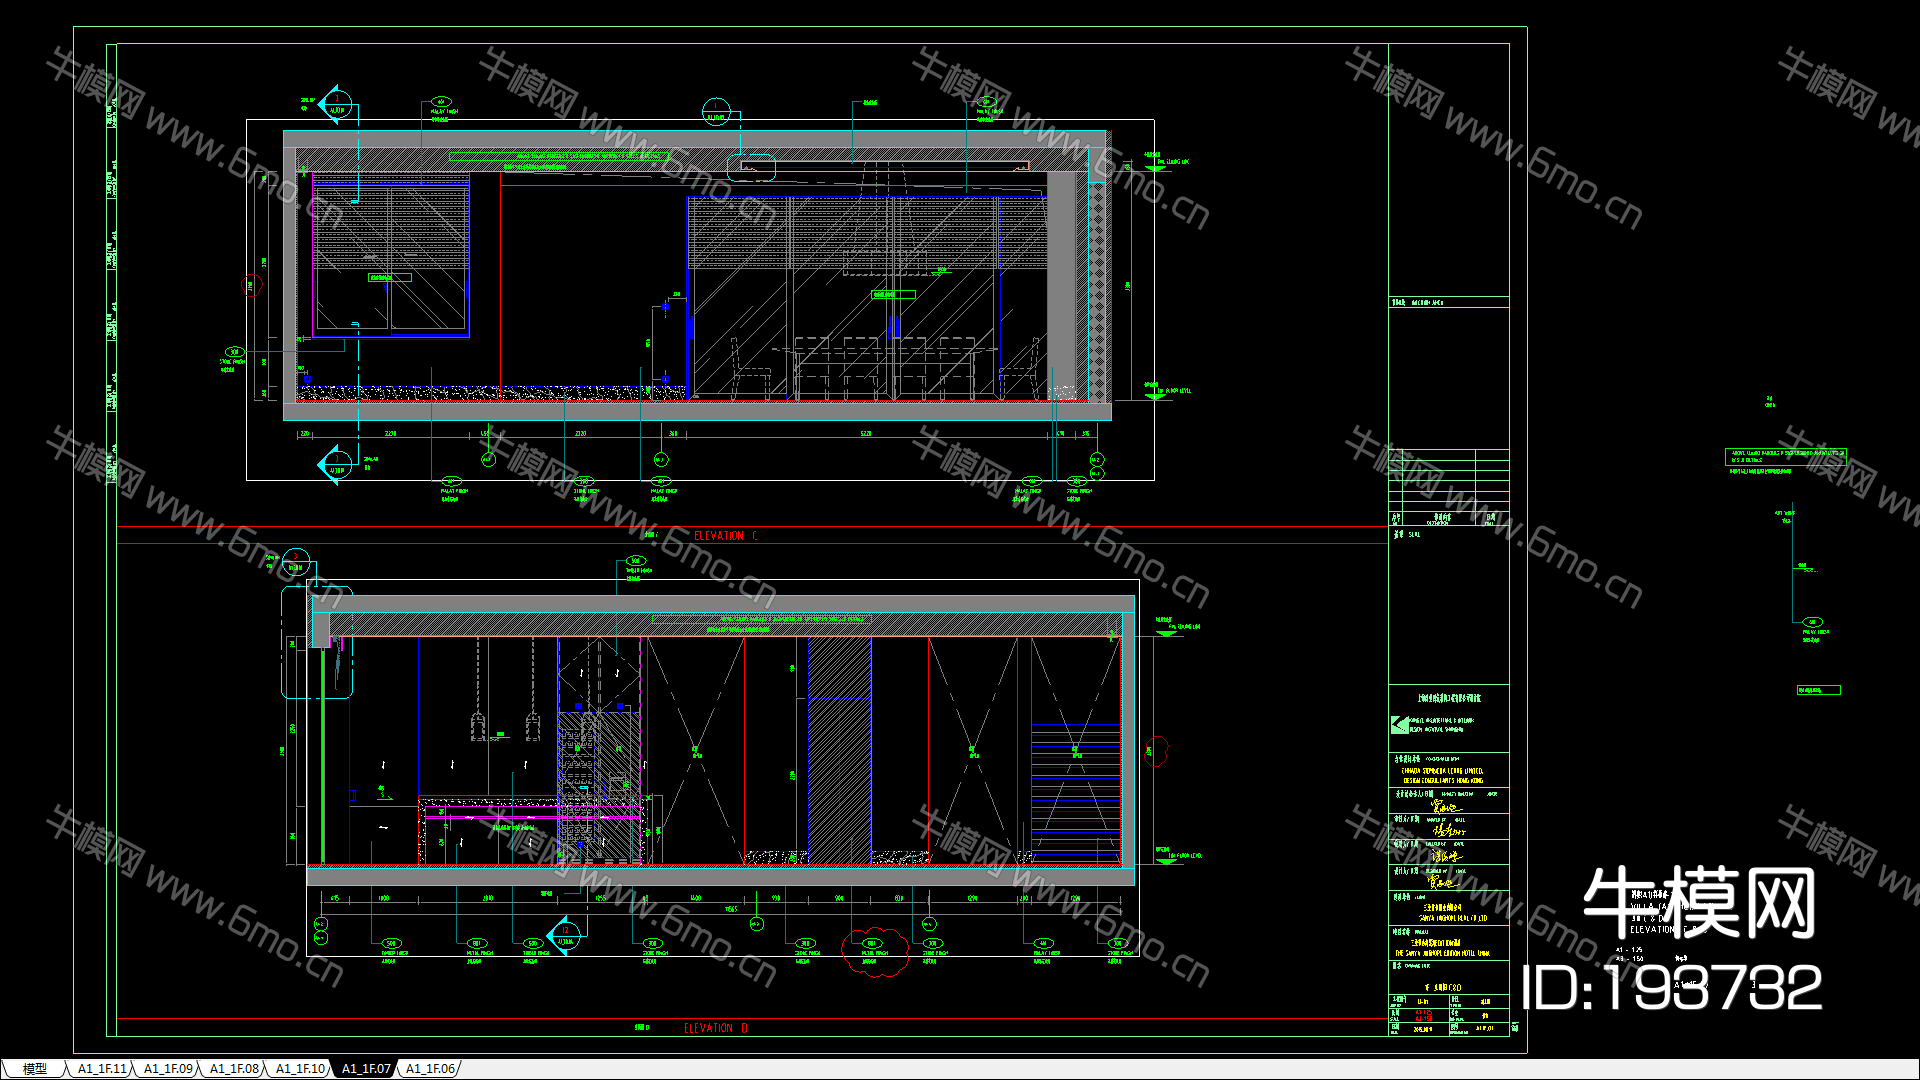 【新加坡SCDA设计】三亚艾迪逊A+B户型私人别墅样板间丨建筑效果图+效果图+CAD施工图